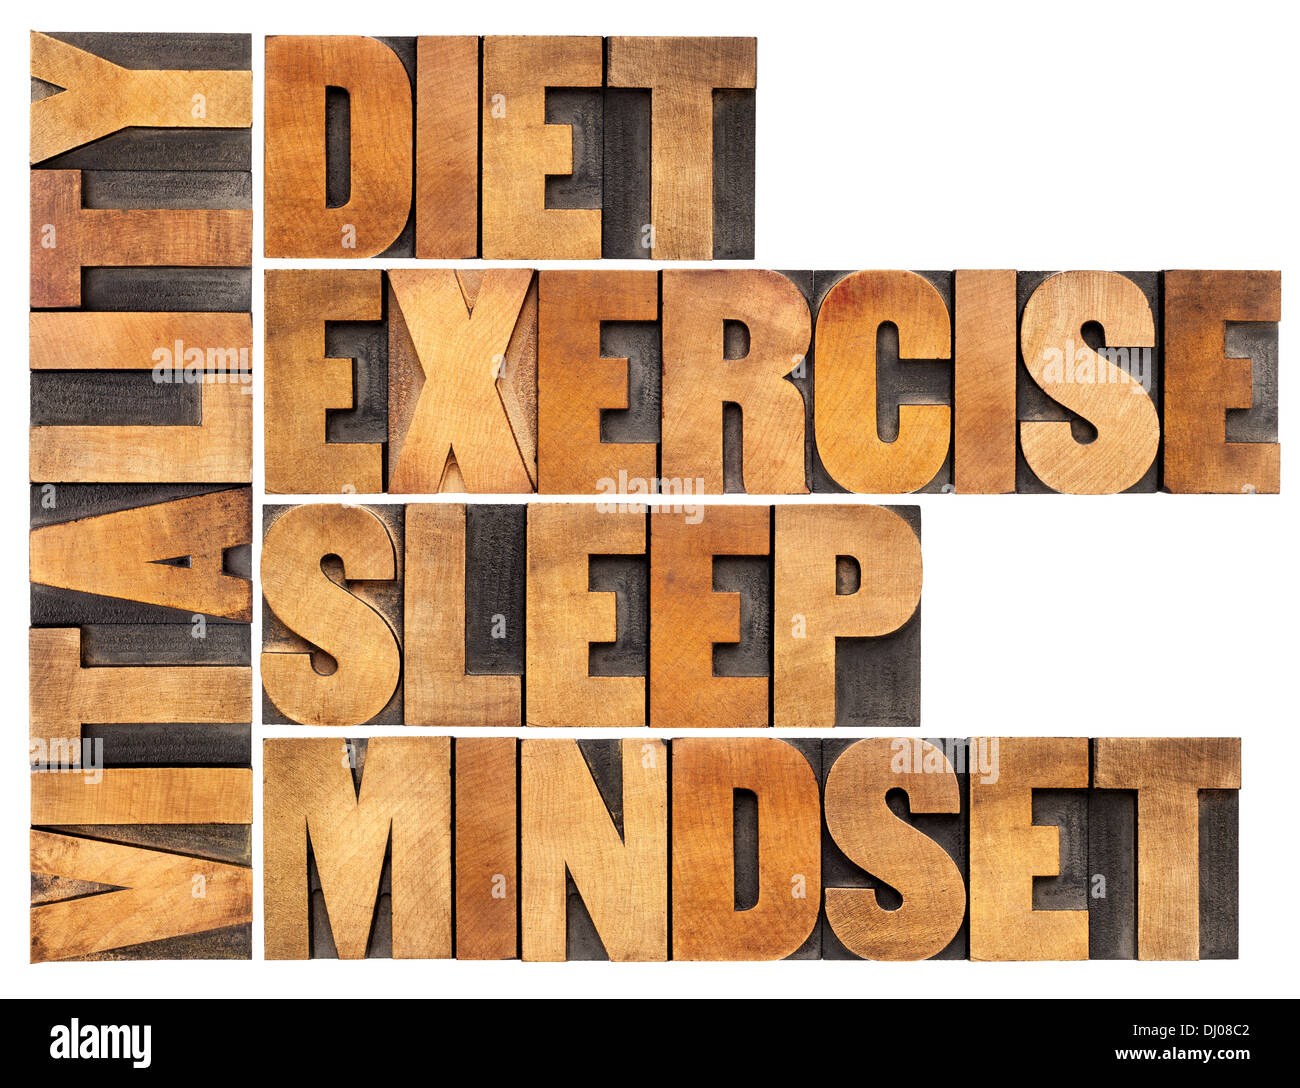 L'alimentation, le sommeil, l'exercice et d'esprit - Vitalité - concept mot isolé en résumé la typographie vintage type de bois Banque D'Images